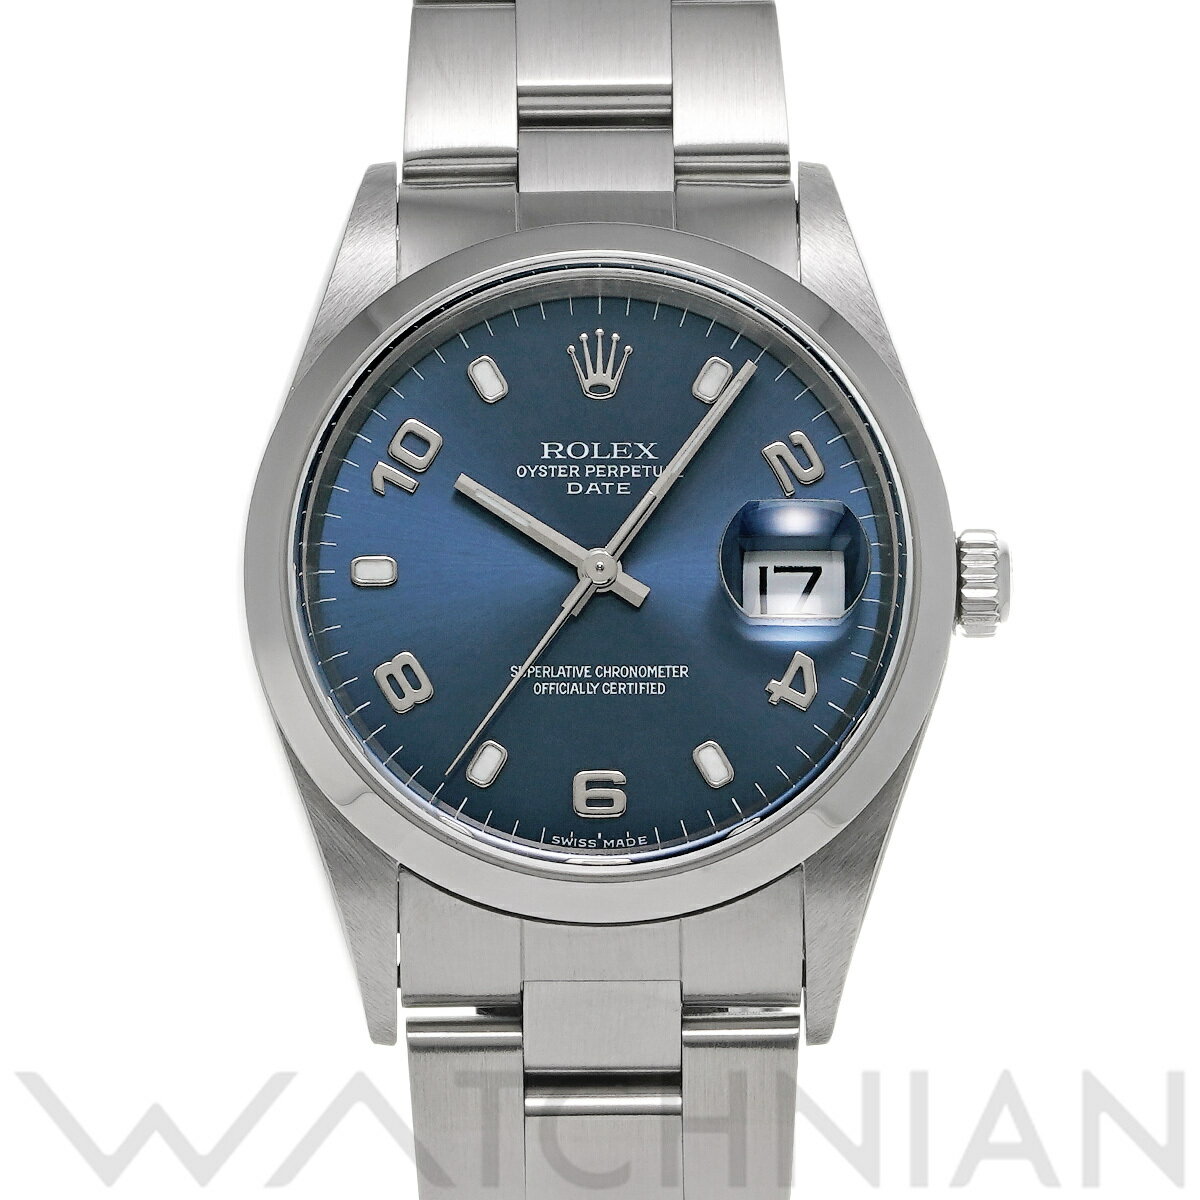 【5種選べるクーポン】【ローン60回払い無金利】【中古】 ロレックス ROLEX オイスターパーペチュアル デイト 15200 A番(1999年頃製造) ブルー メンズ 腕時計 ロレックス 時計 高級腕時計 ブランド